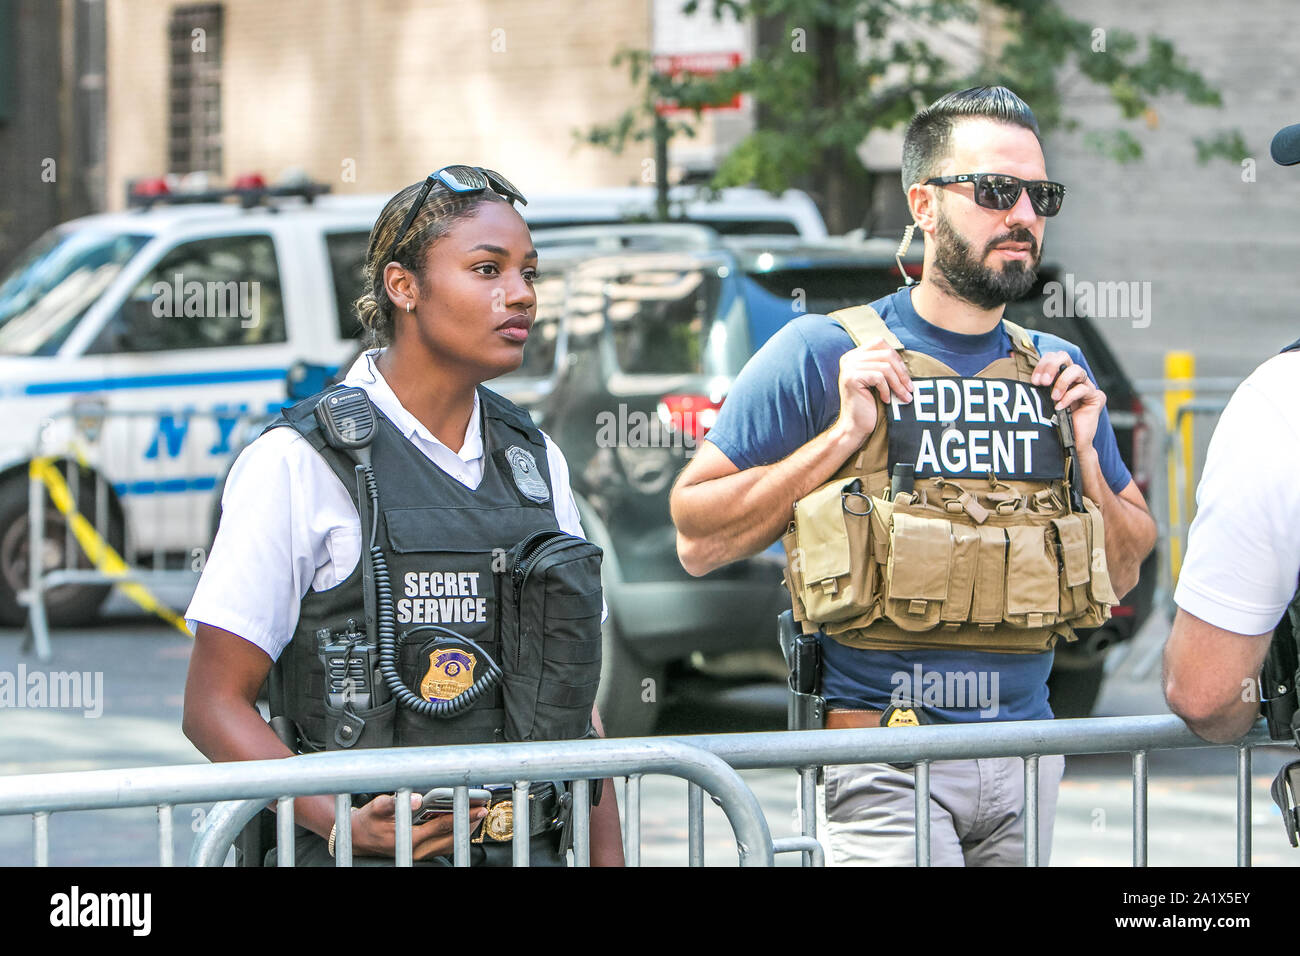 New York City, 27.9.2019: US-Federal Agent und ein Secret Service Agent an einem Kontrollpunkt in Manhattan während der UN-Vollversammlung. Stockfoto